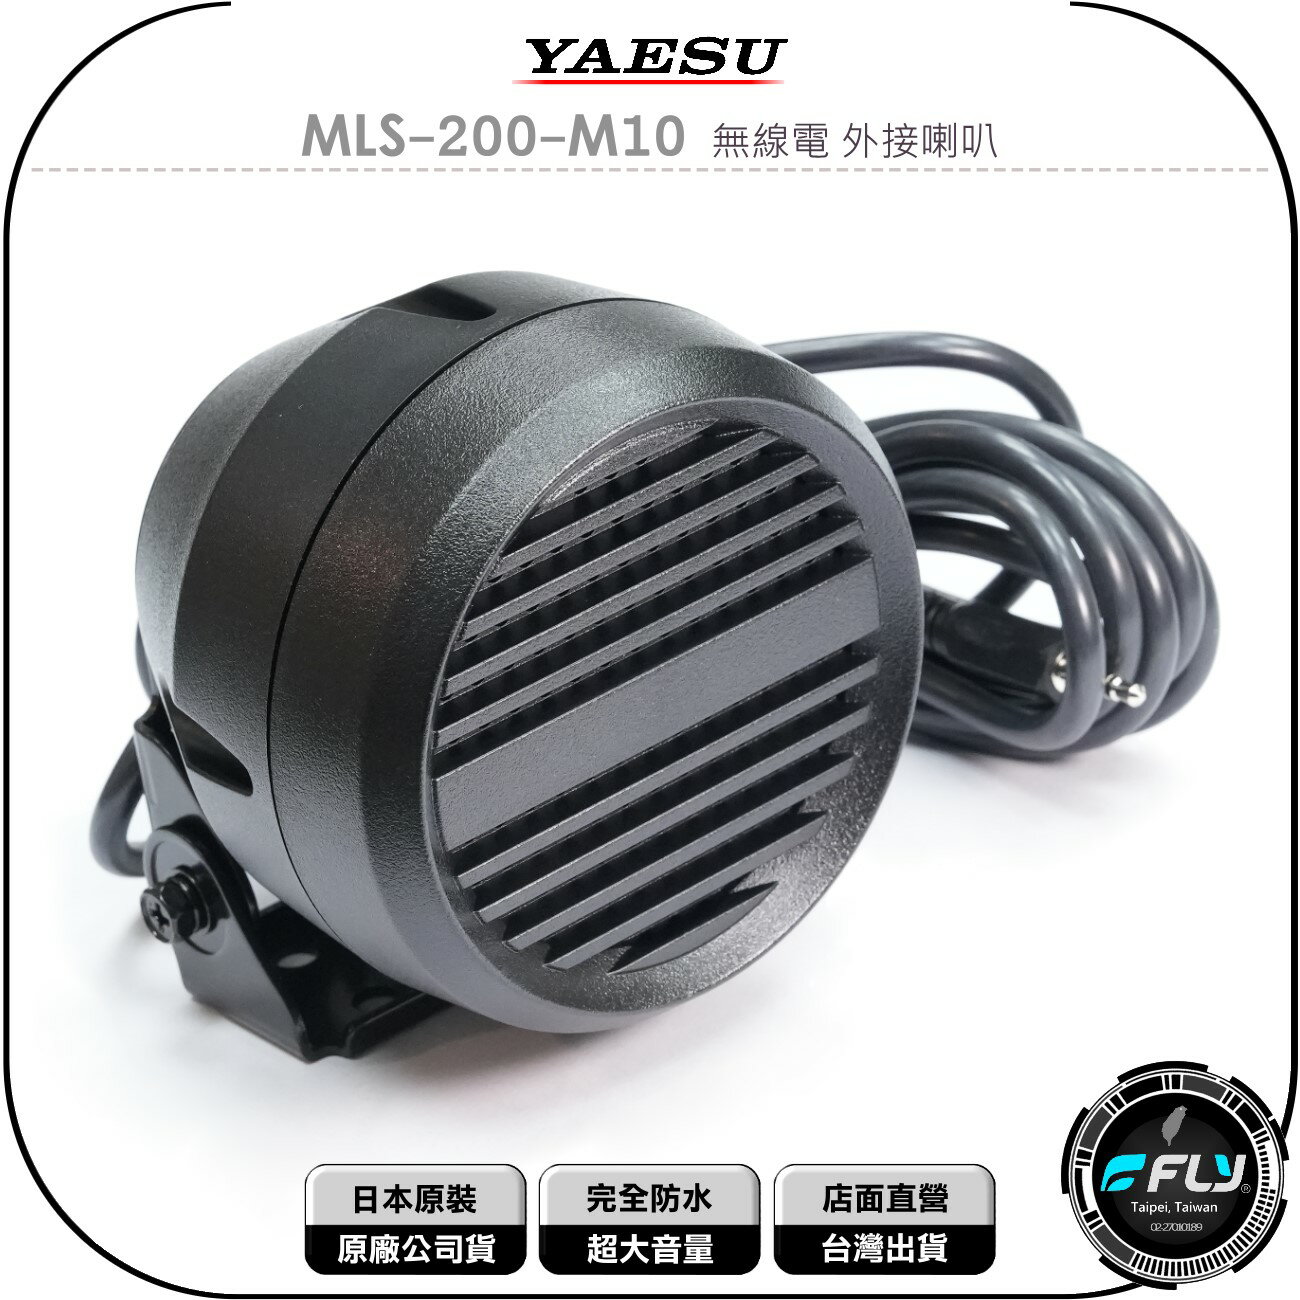 《飛翔無線3C》YAESU MLS-200-M10 無線電 外接喇叭◉公司貨◉完全防水◉超大音量◉車機外接◉座台機連接